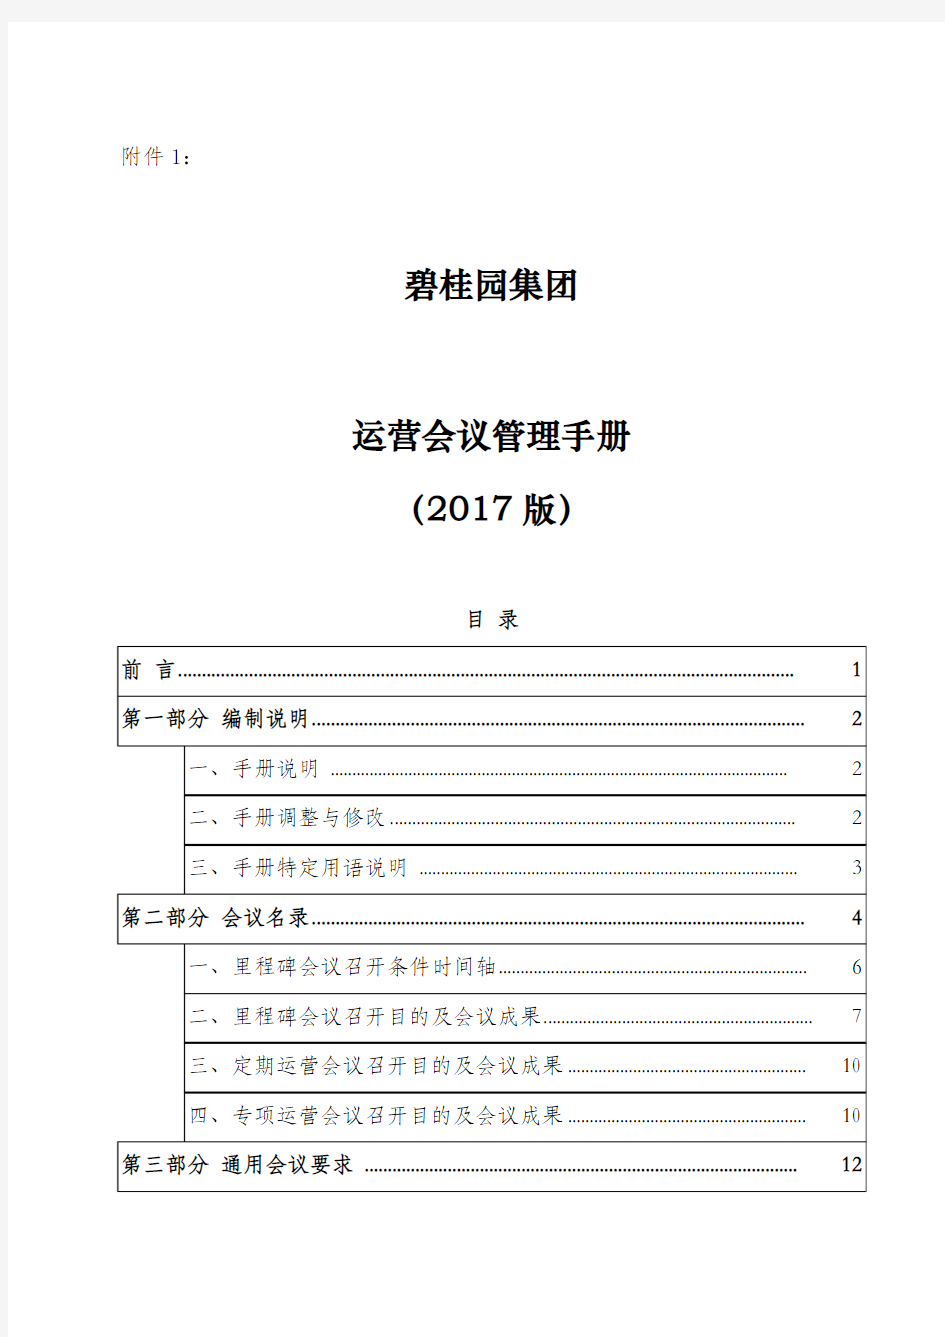 hy001运营会议管理手册(集团)(碧桂园 2017版)